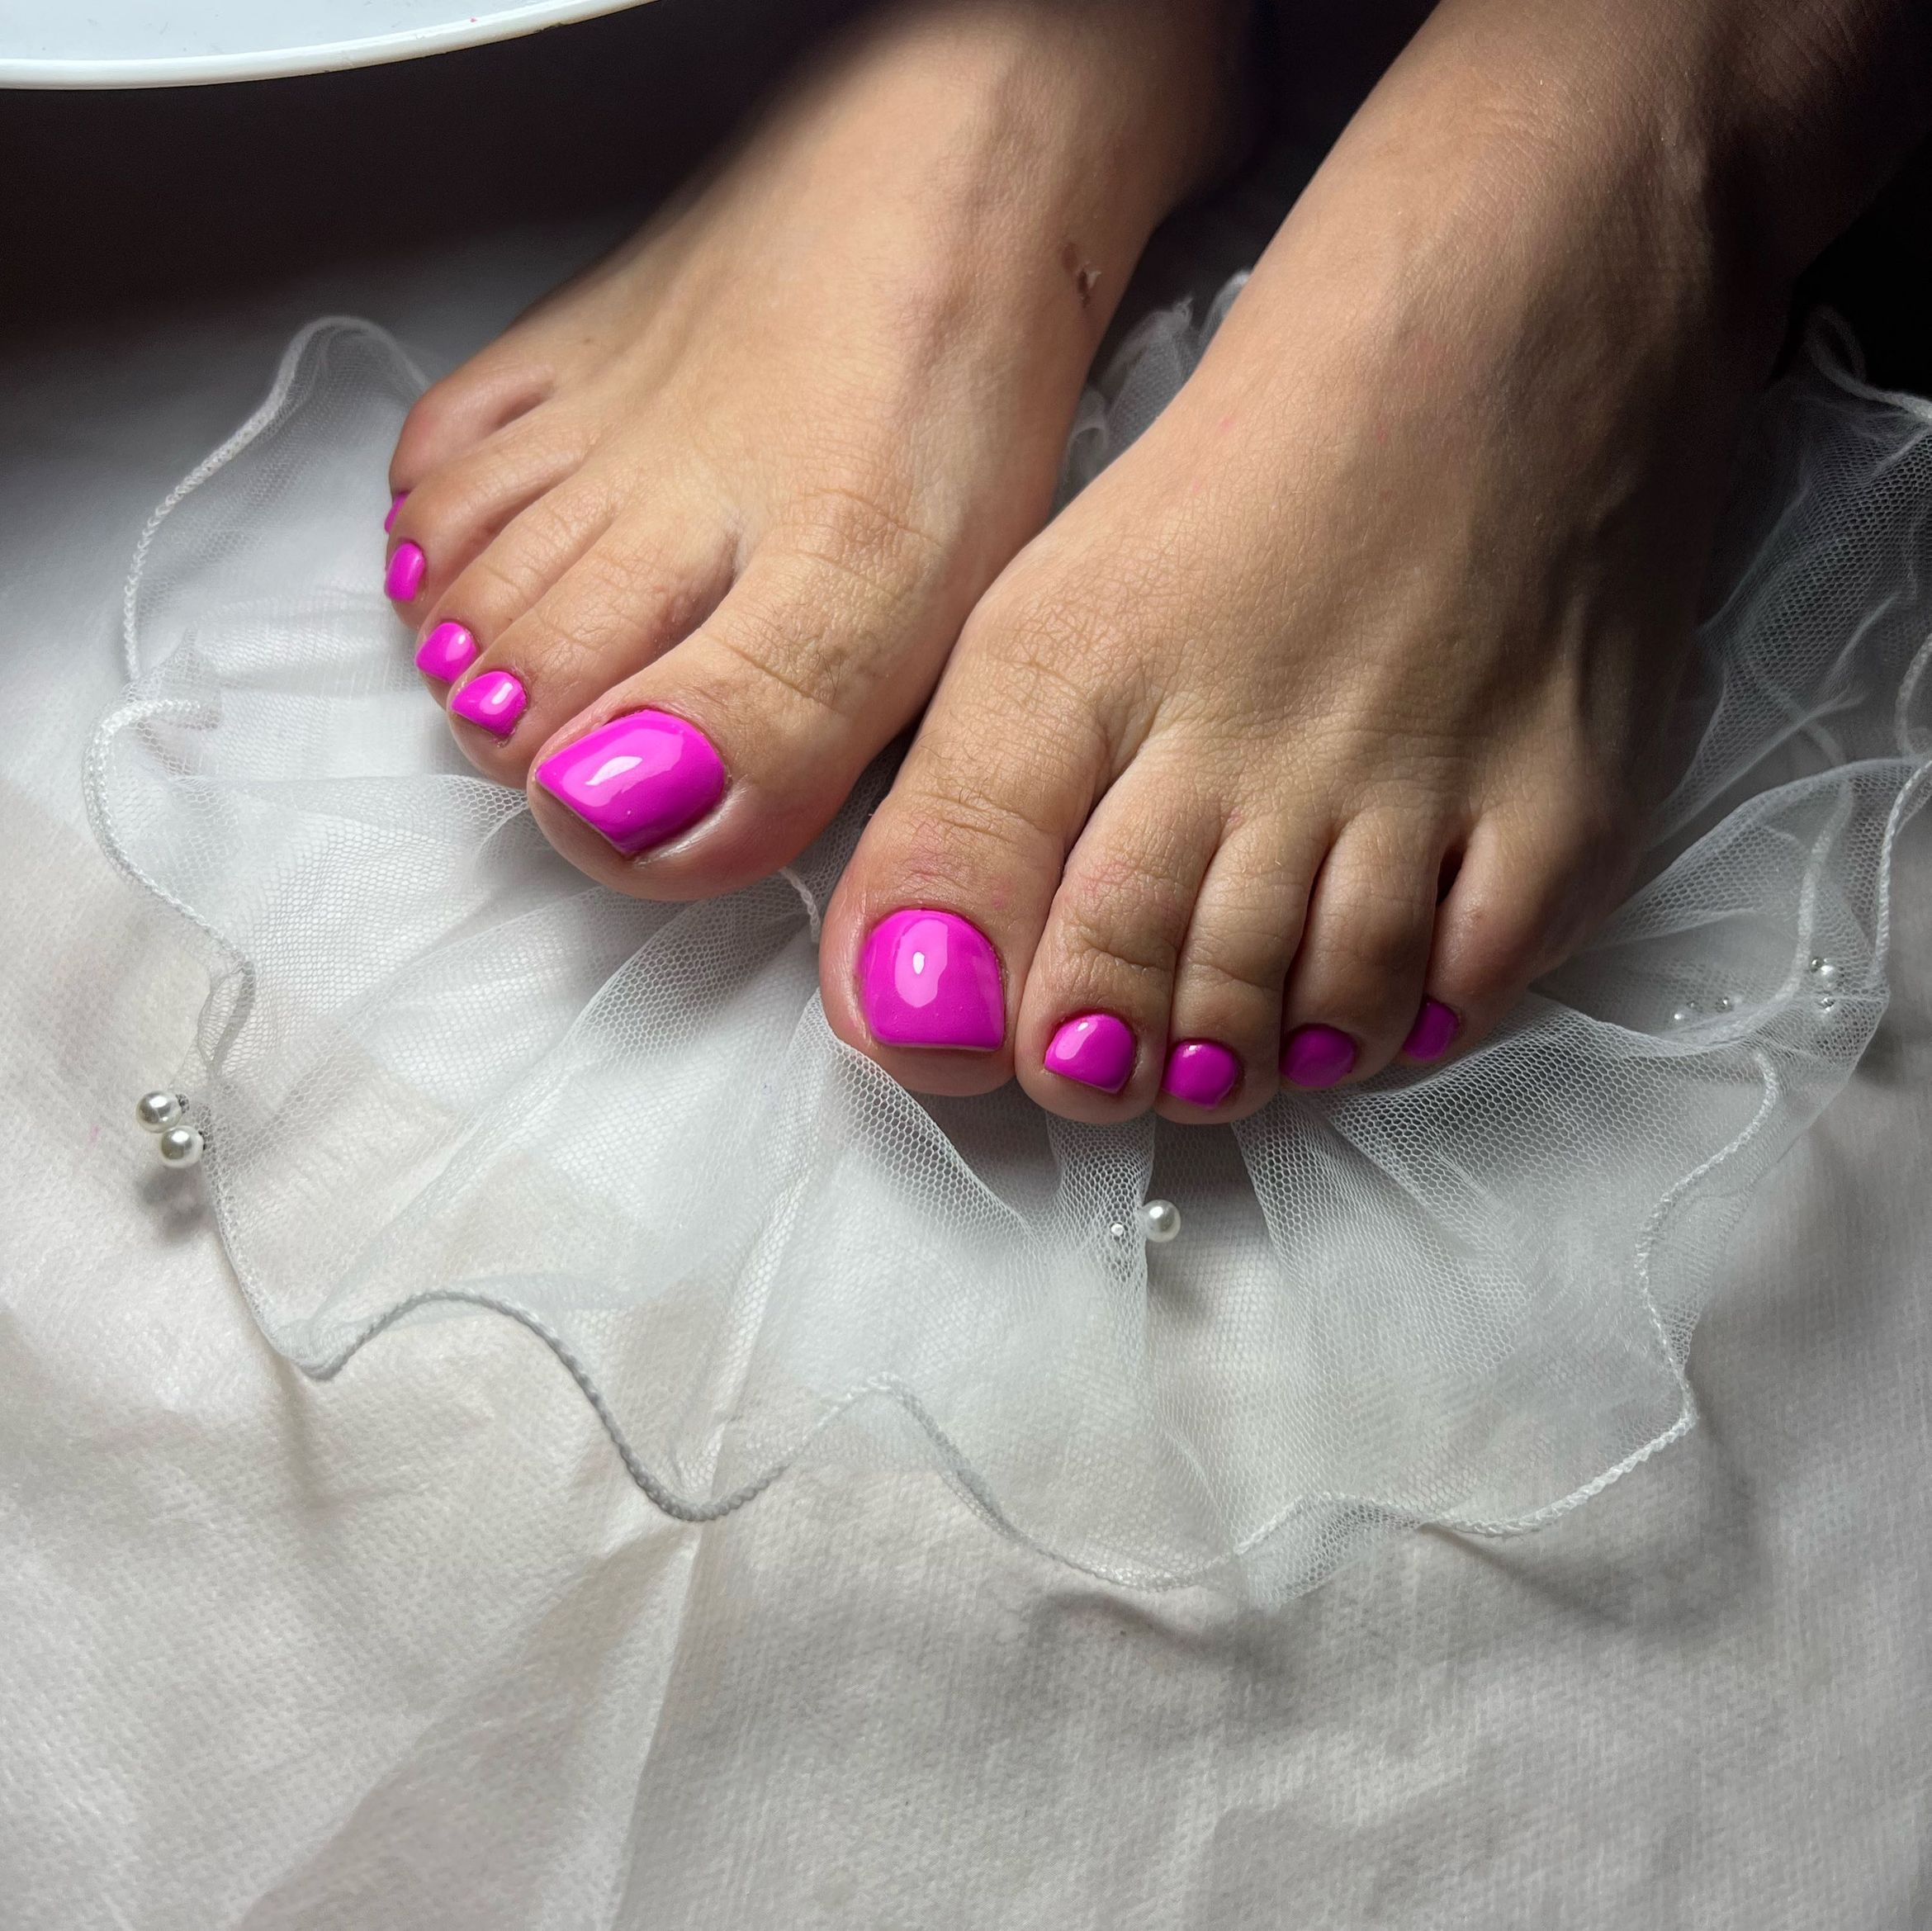 Portfolio usługi Paulina: Komplet hybrydowy ręce + stopy